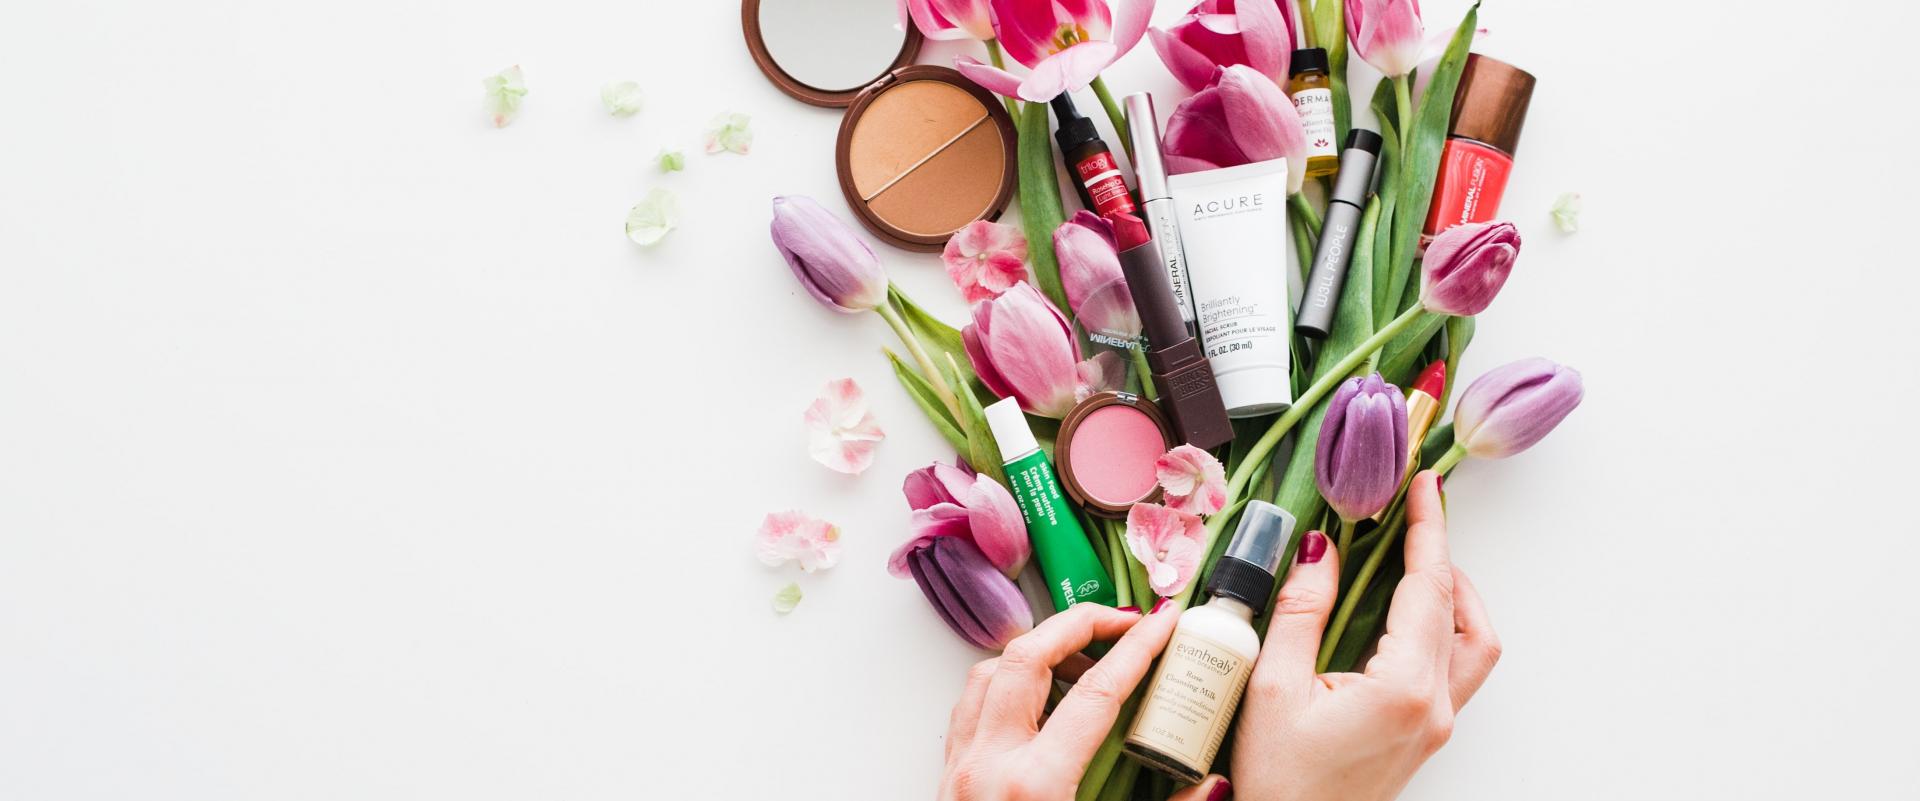 Polska branża kosmetyczna zwiększy sprzedaż do UE do 4,7 mld euro rocznie - informuje PARP